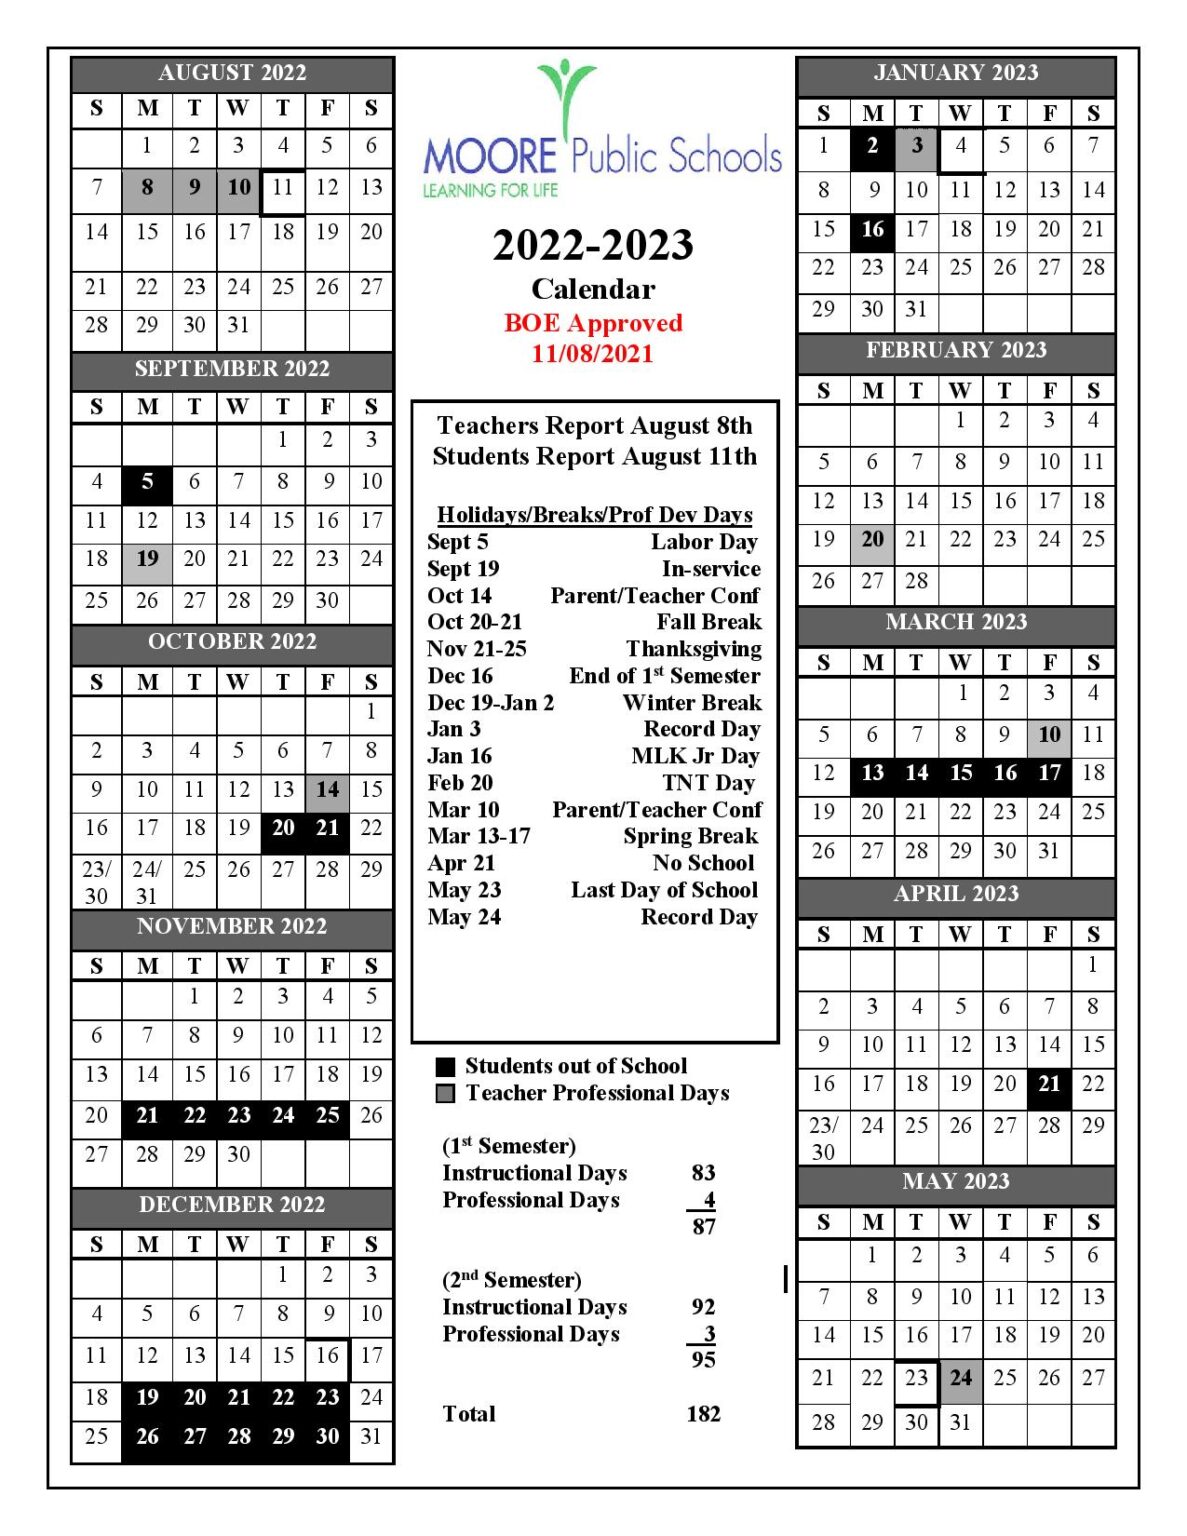 Moore Public Schools Calendar 20222023 in PDF